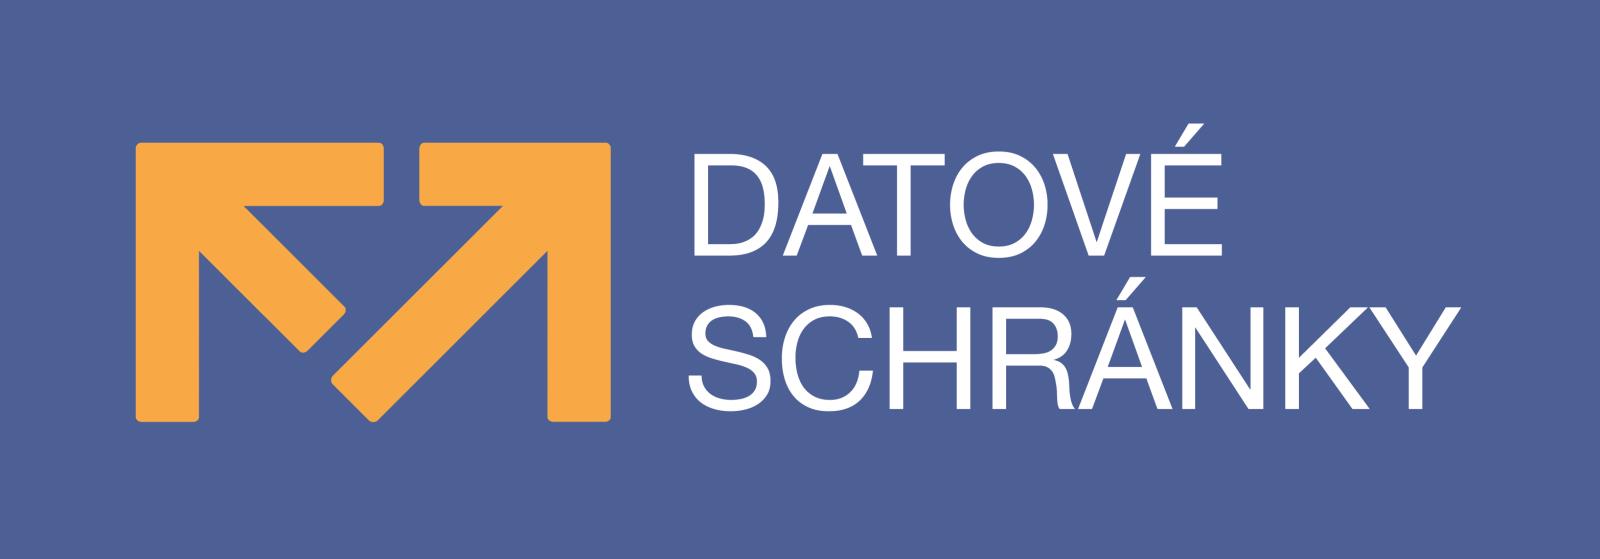 Datove_schranky_-_Logo-primarni01.jpg